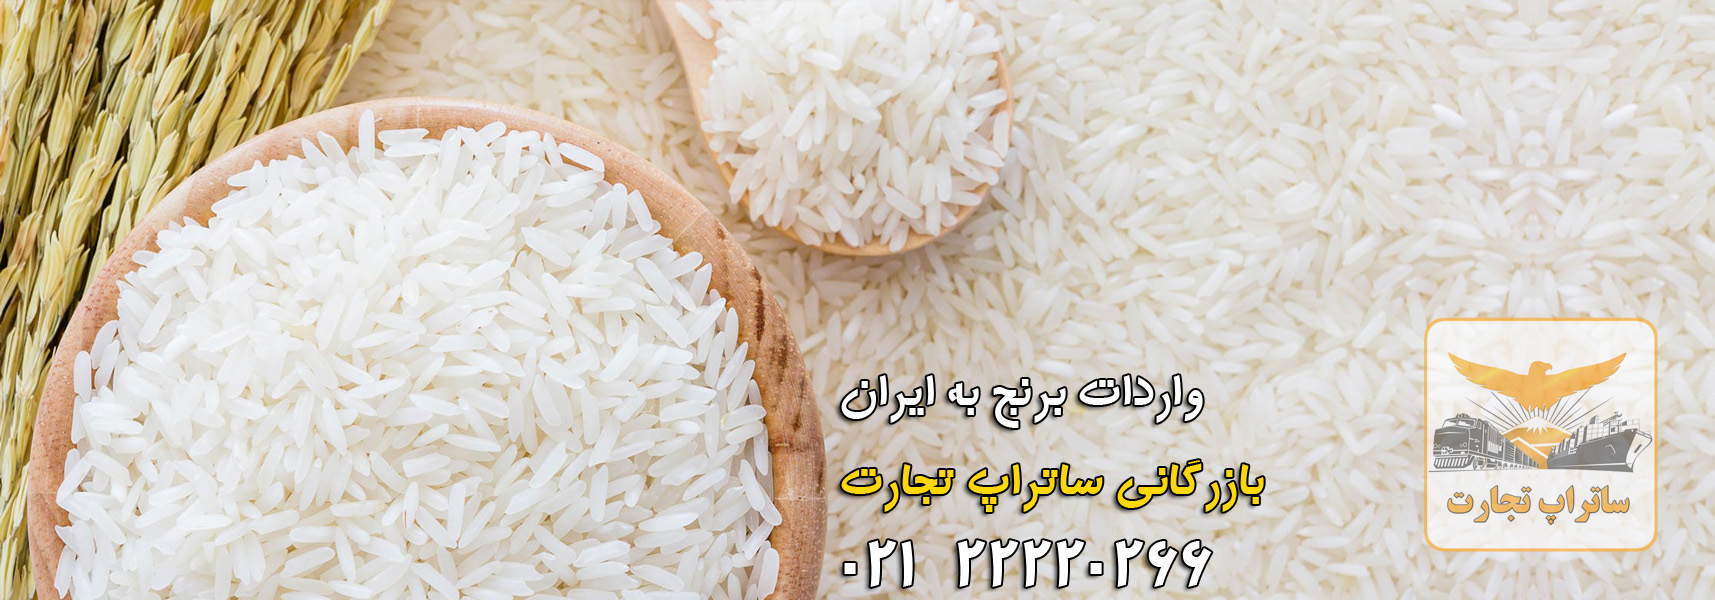 واردات برنج به ایران